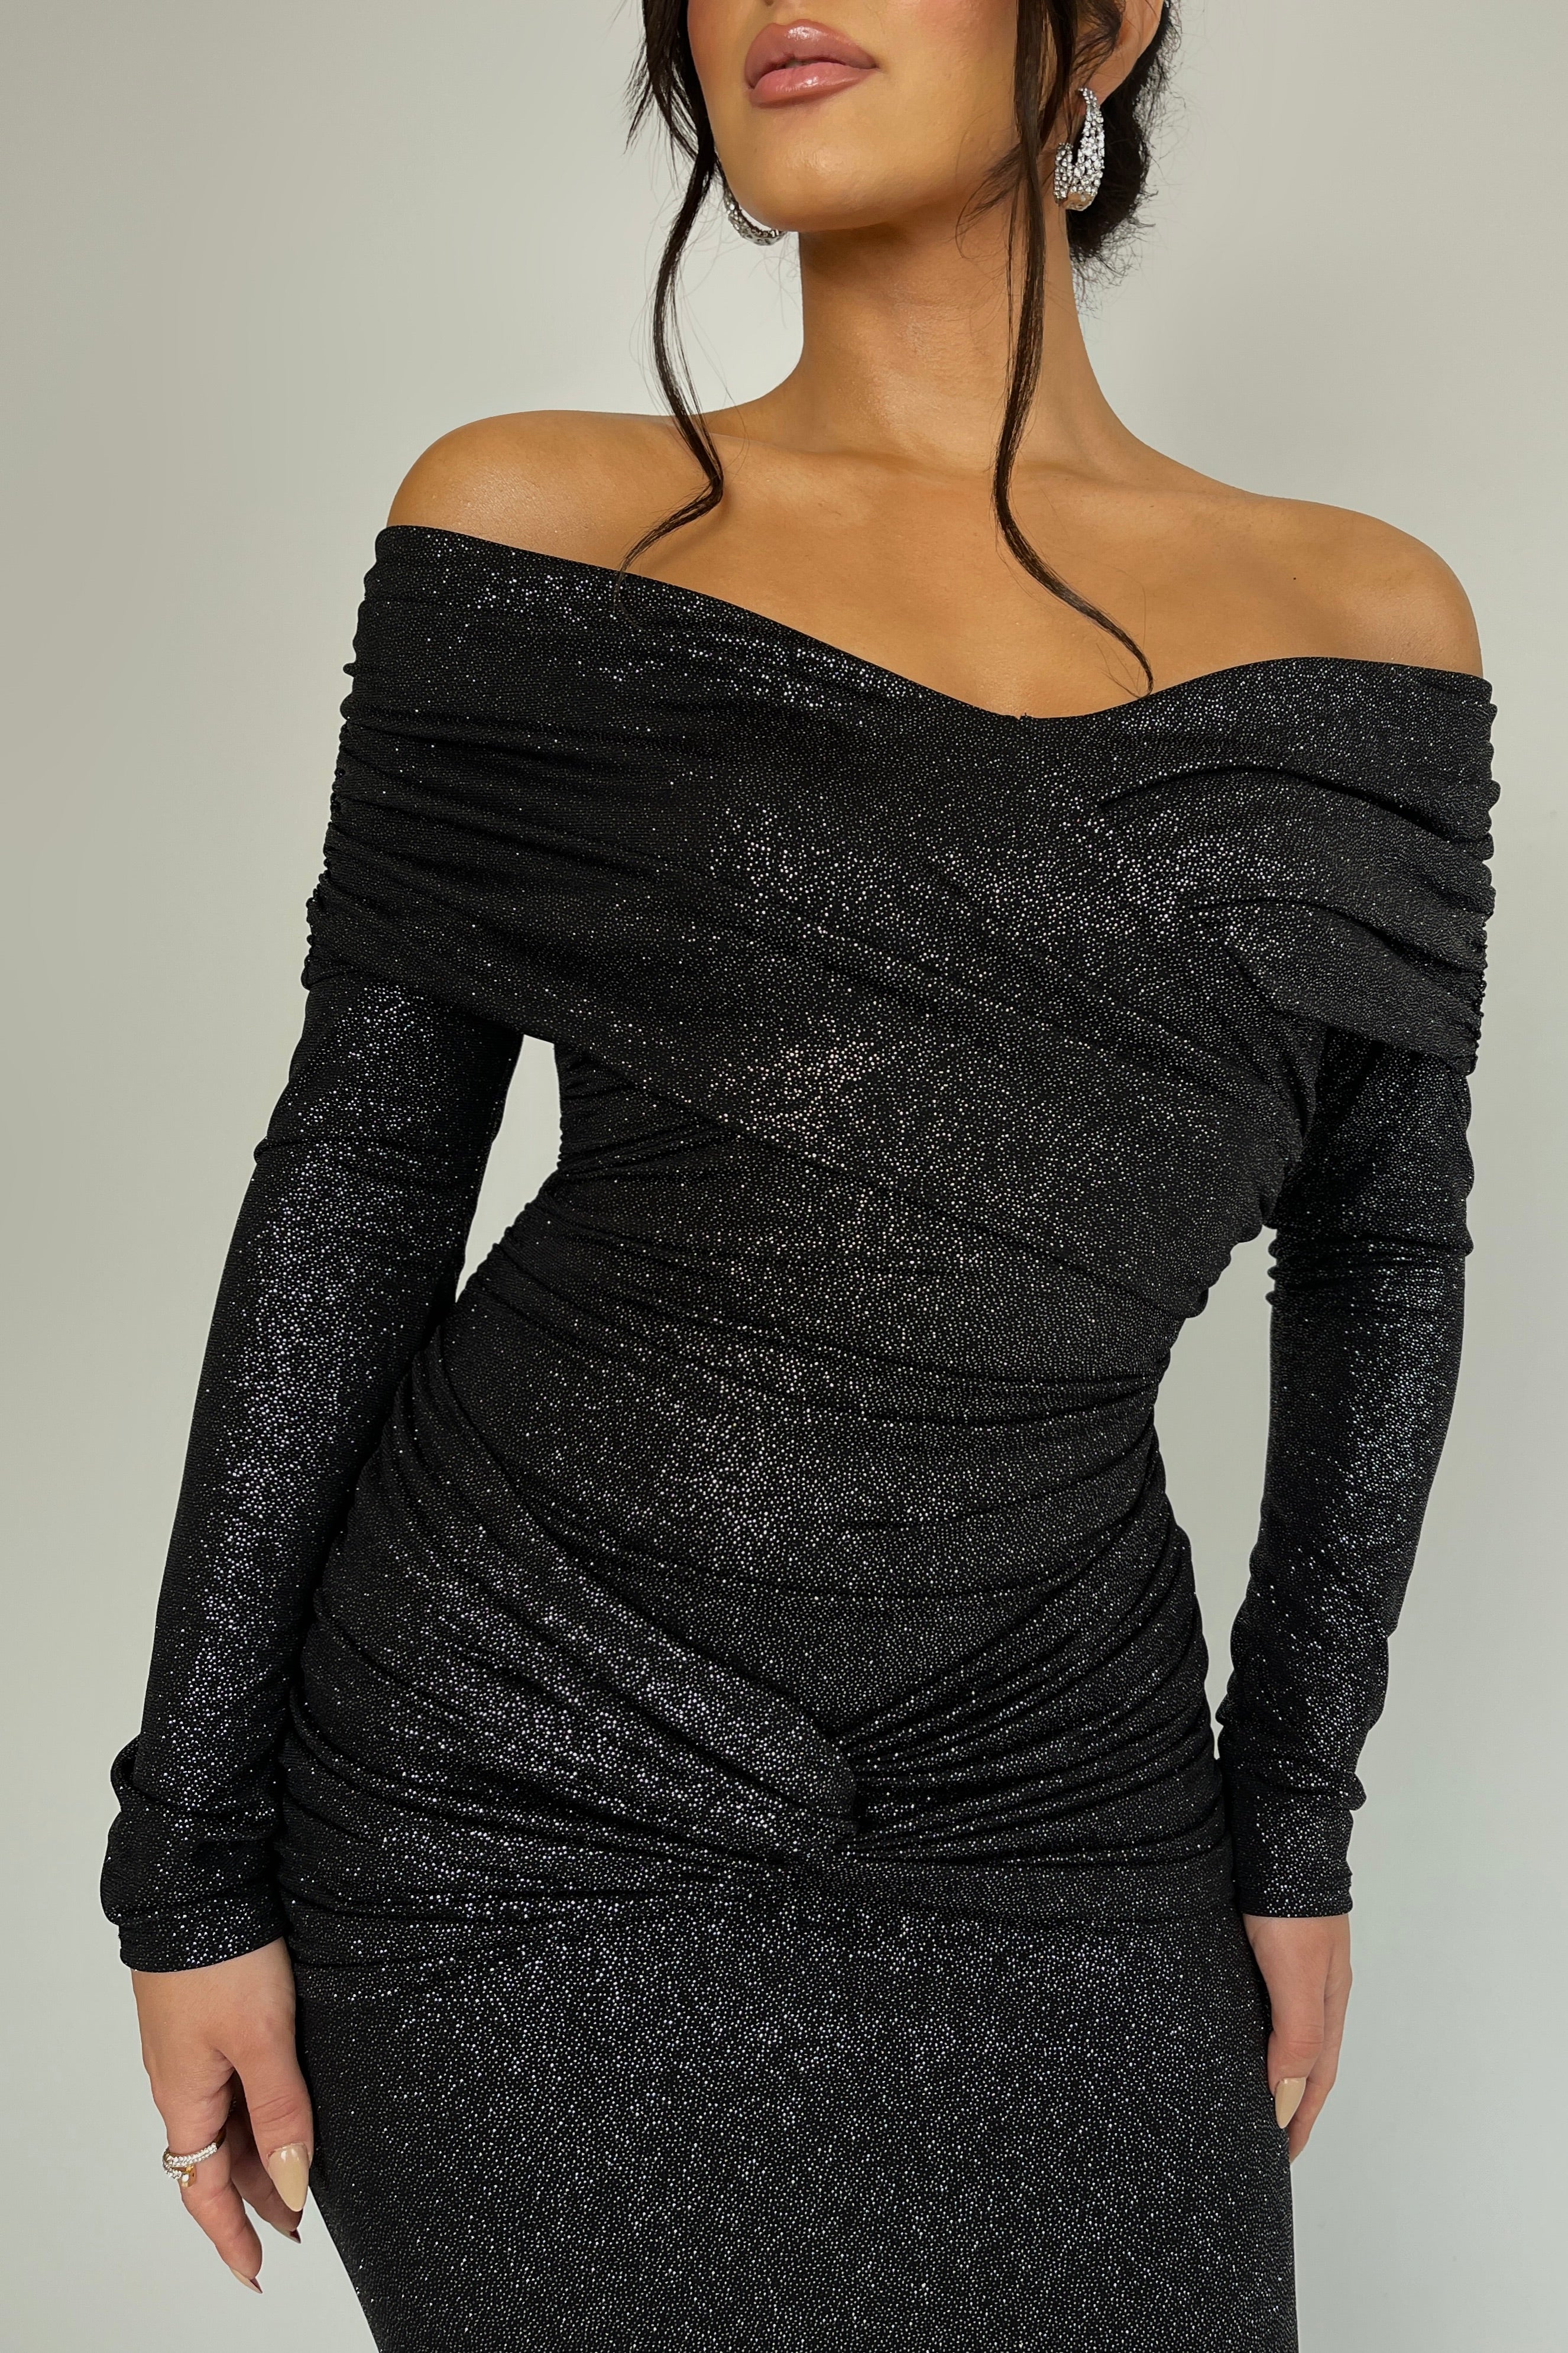 Lorelei Black Glitter Dress